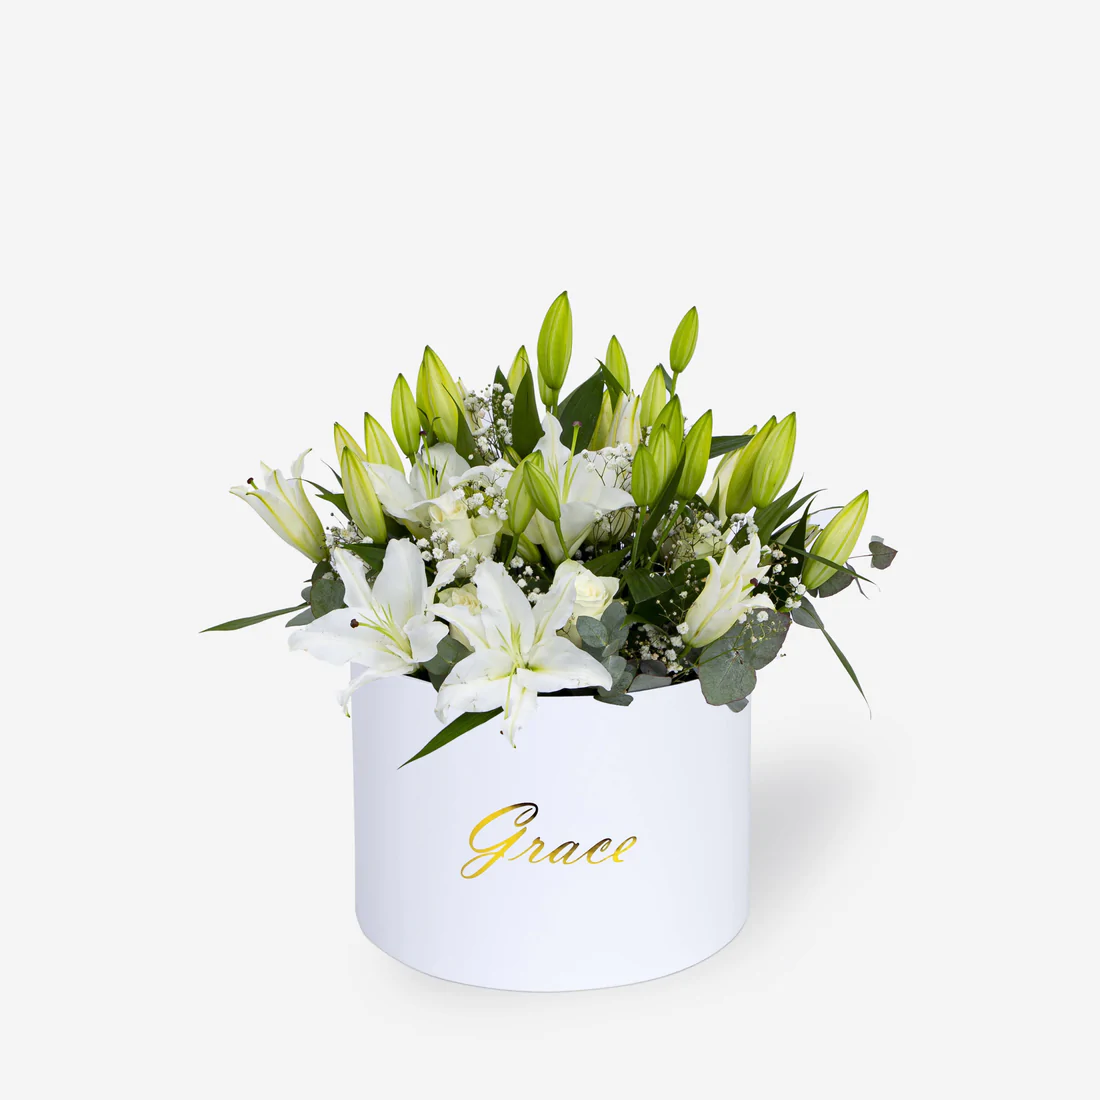 Mayfair Flower in white box